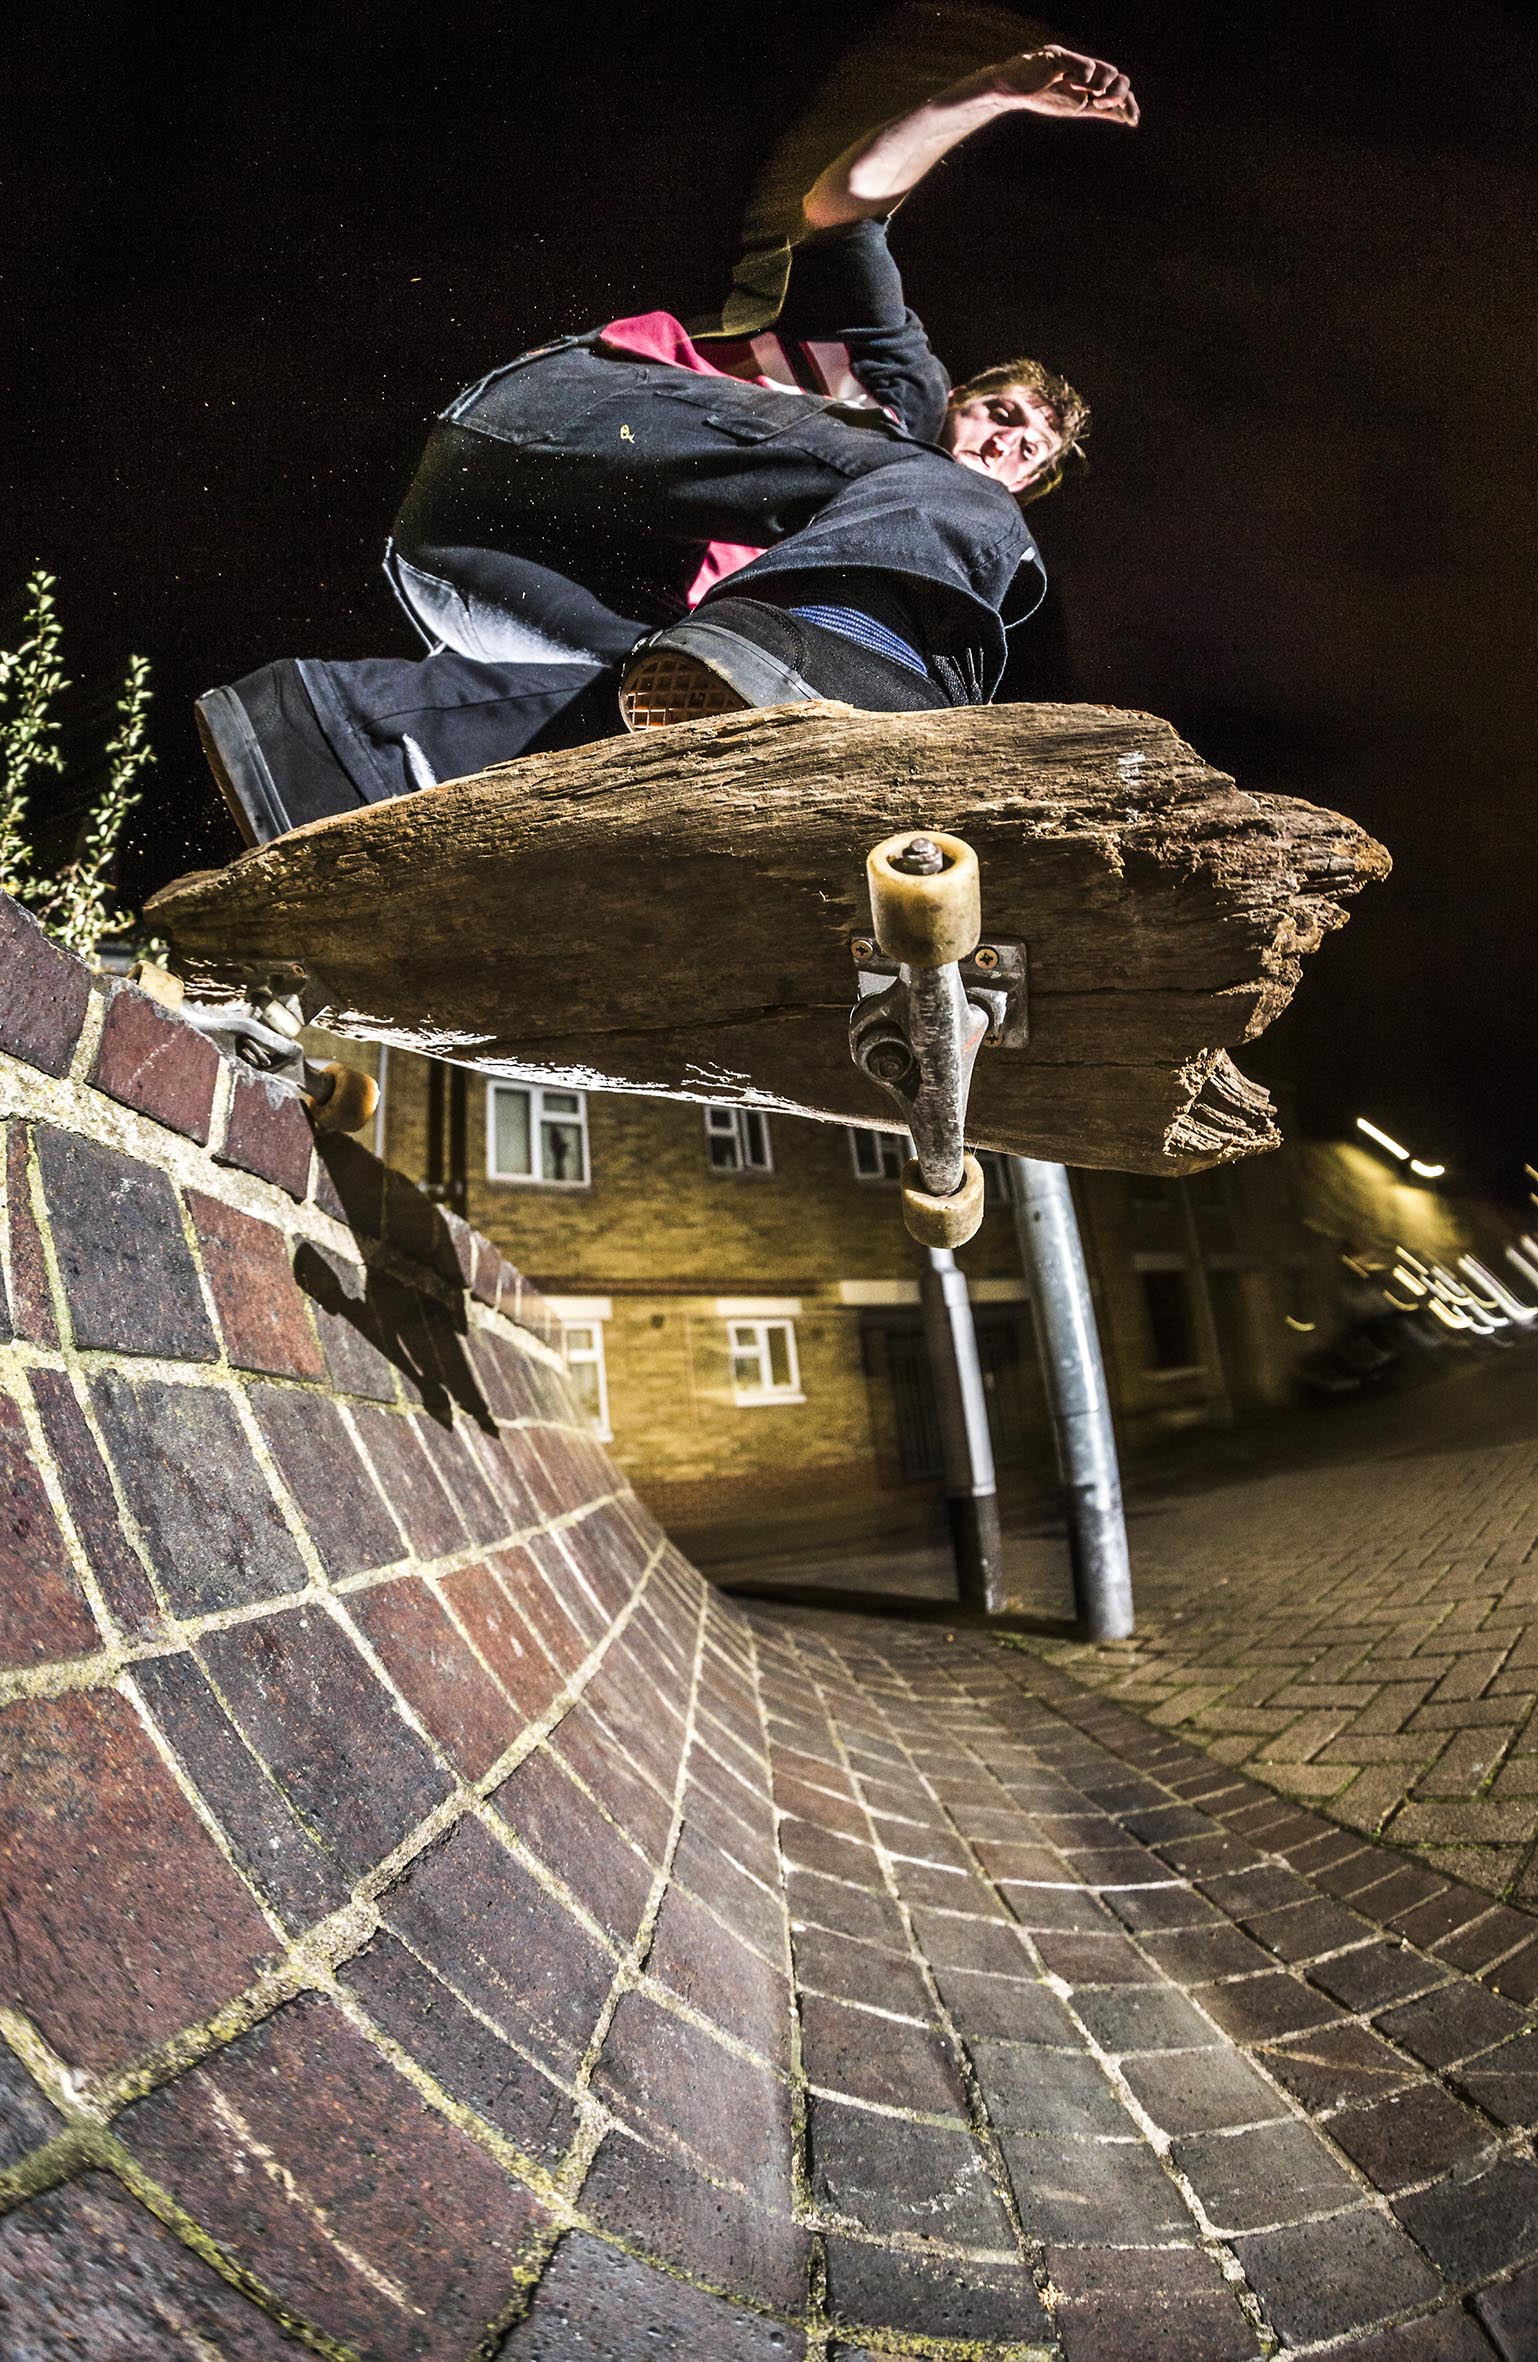 Brendan Watson - plank roll in